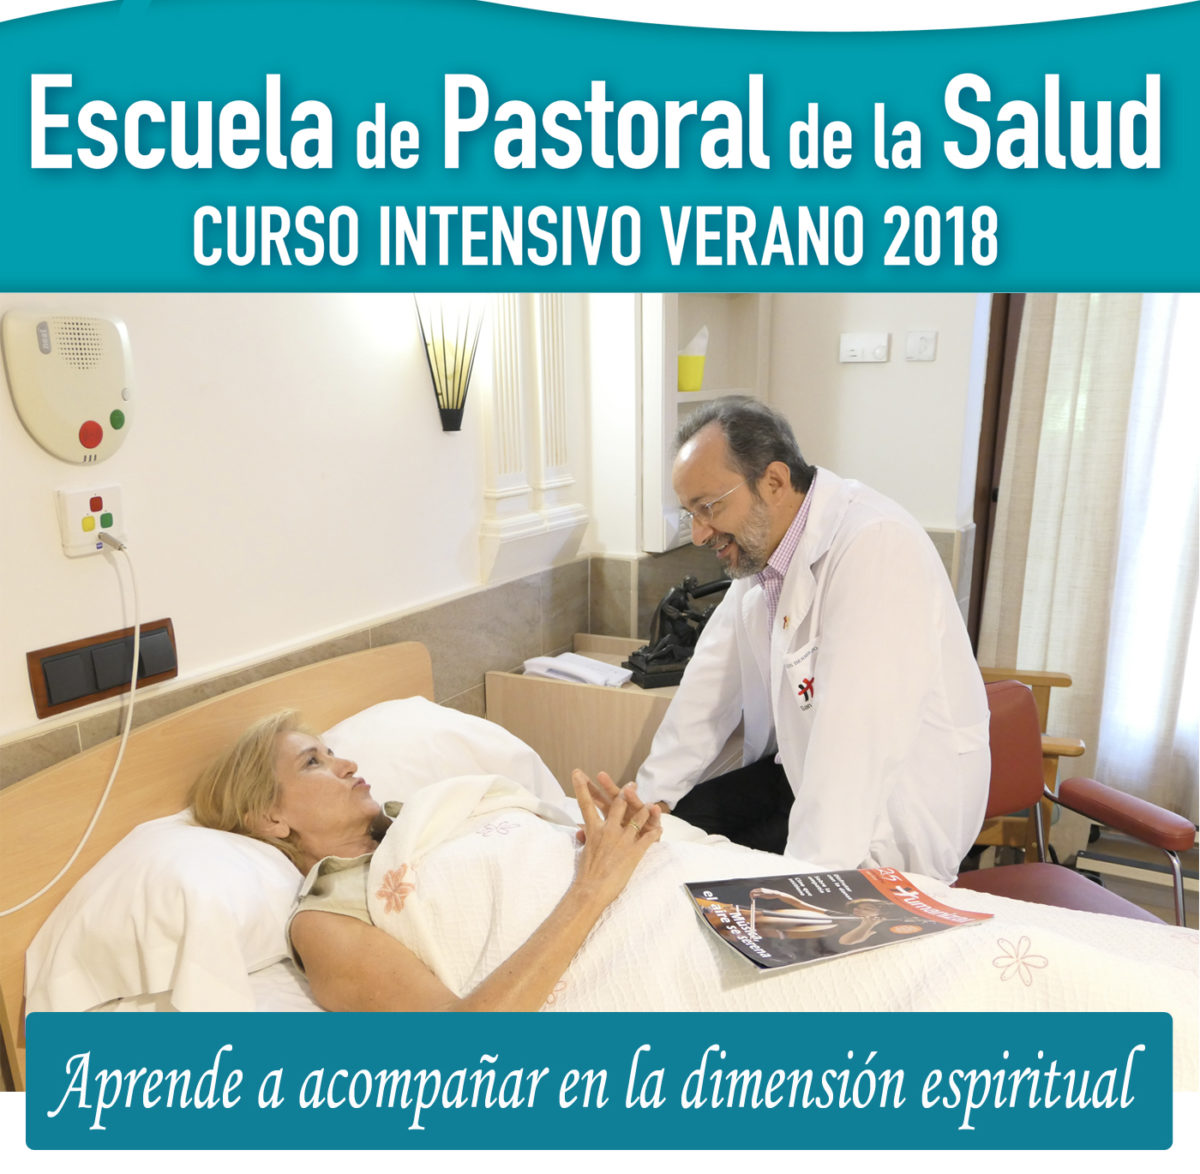 Escuela de Pastoral de la Salud, julio 2018